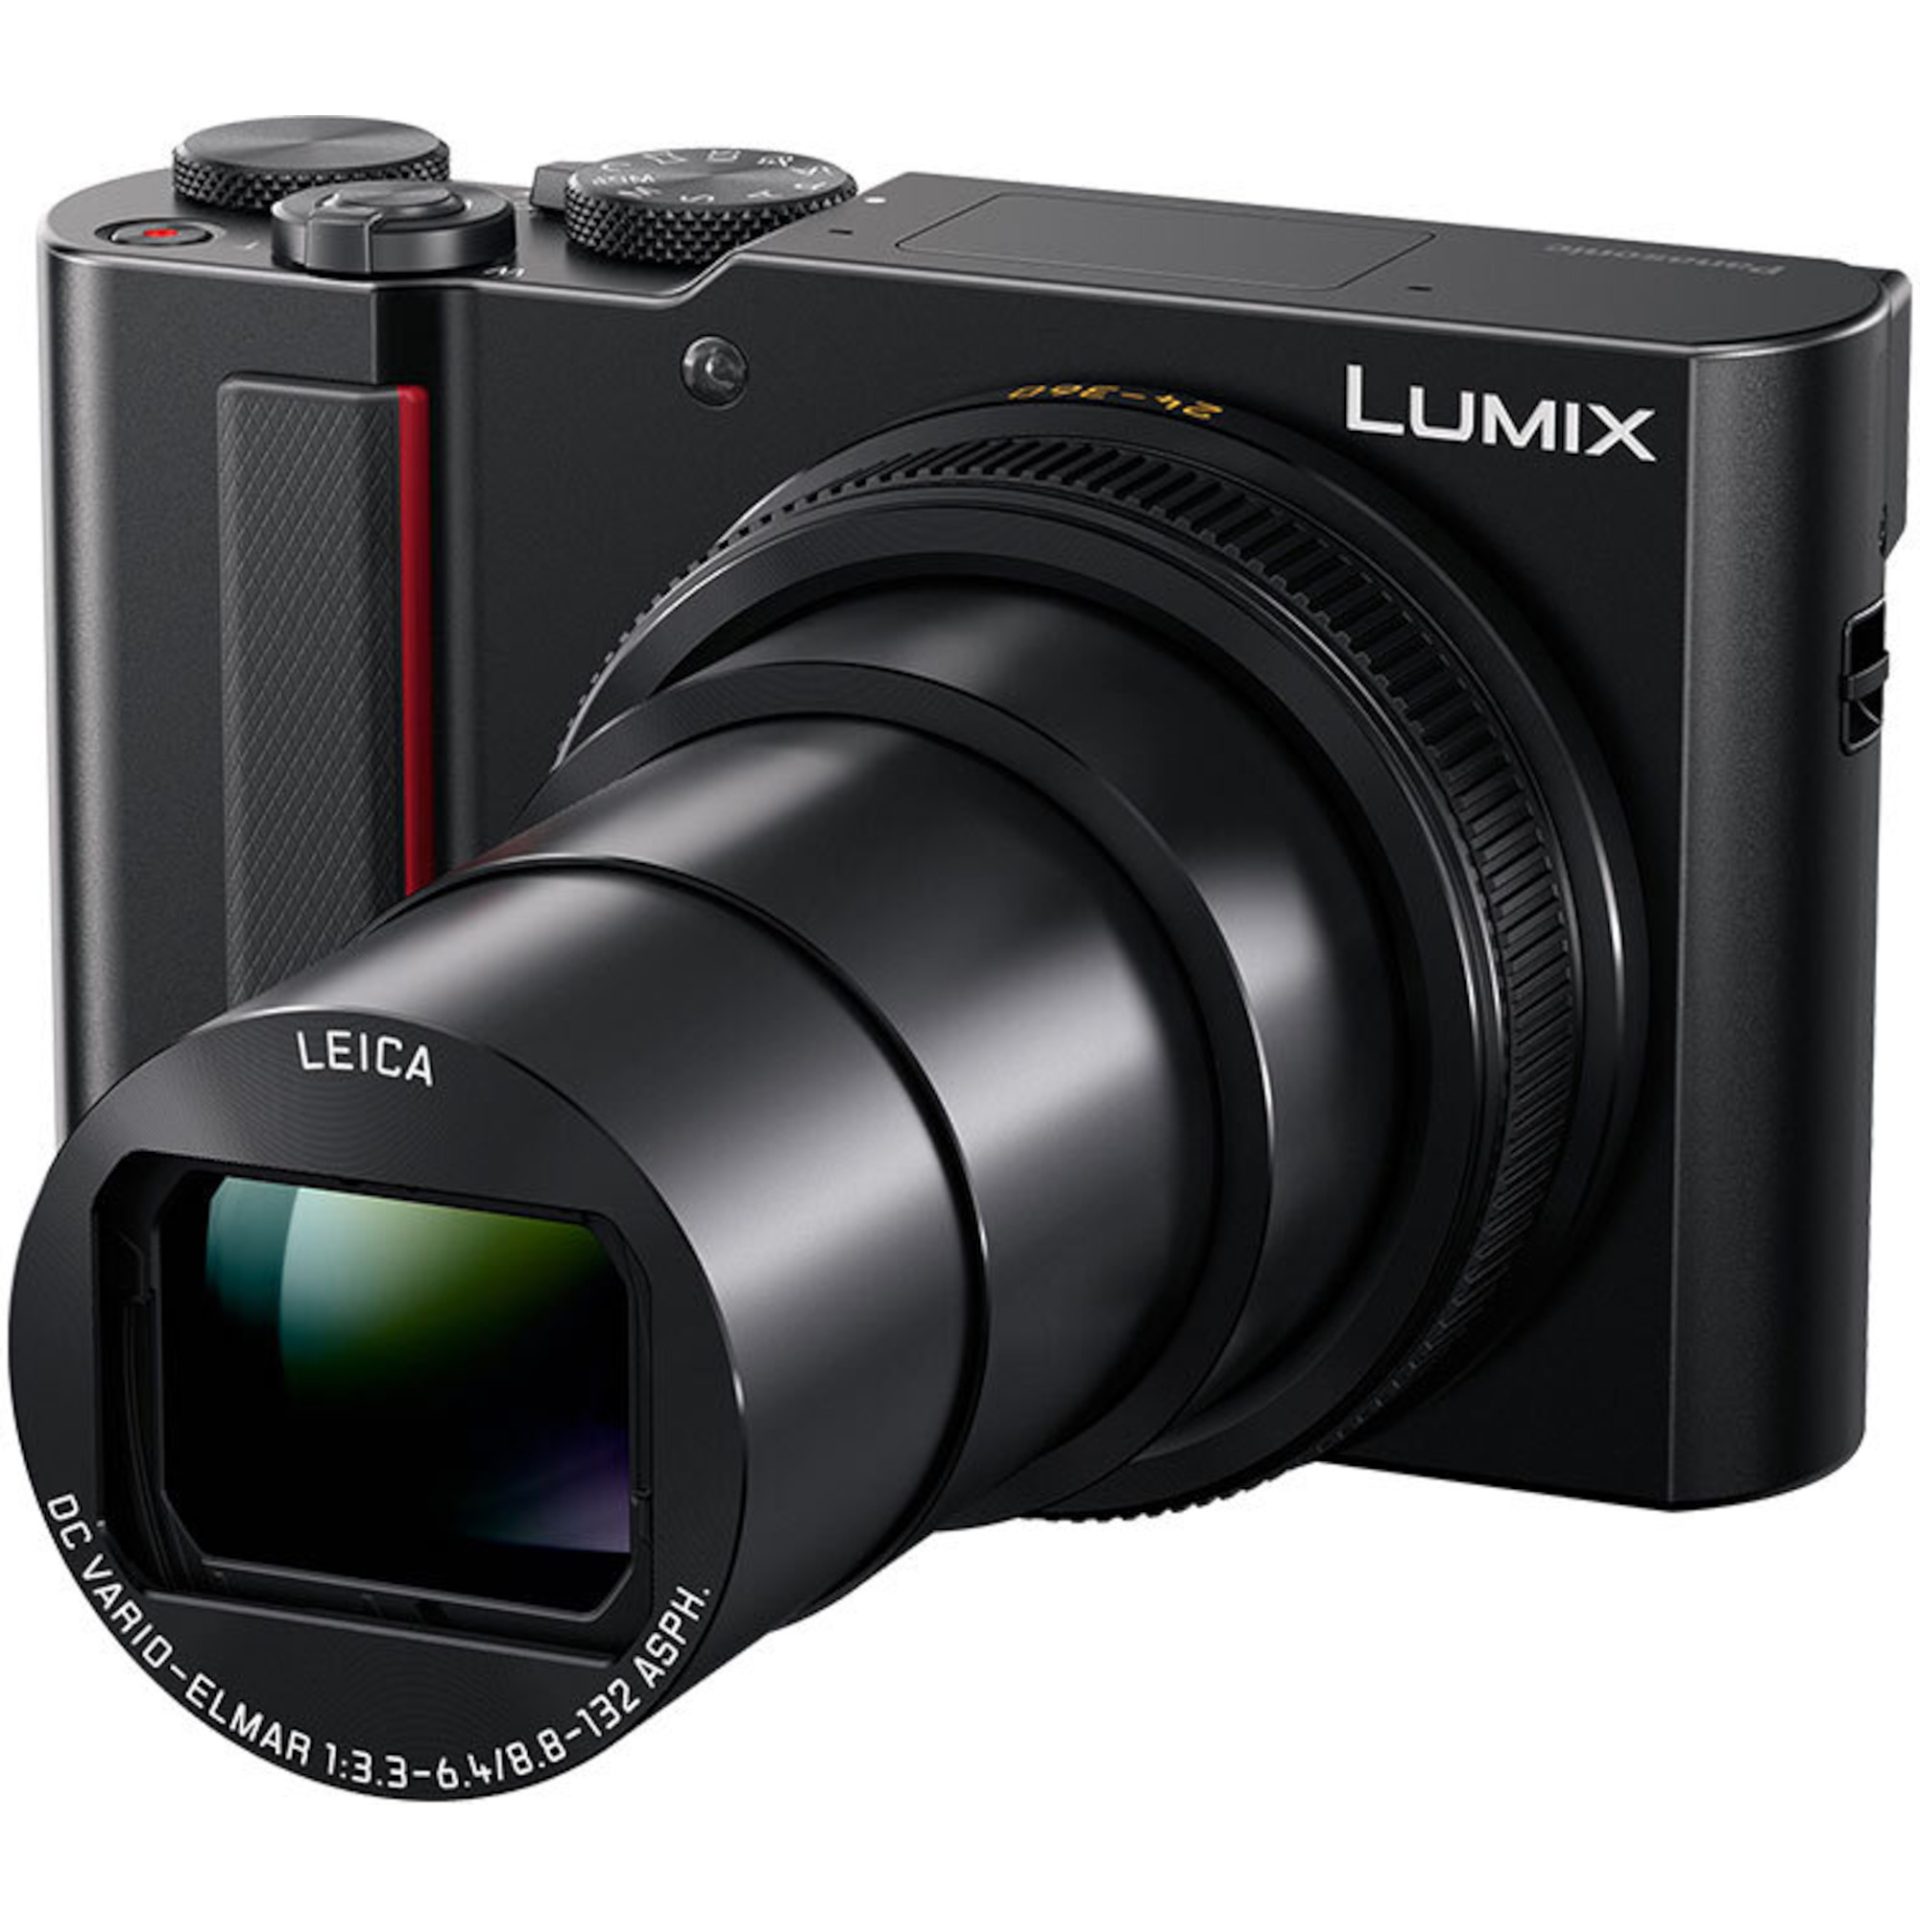 Panasonic DC-TZ200D Lumix kompaktní digitální fotoaparát (20,1MP MOS snímač, 4K 24P a 30P video, Leica Zoom objektiv, 15x zoom, Wi-Fi, Post Focus), če